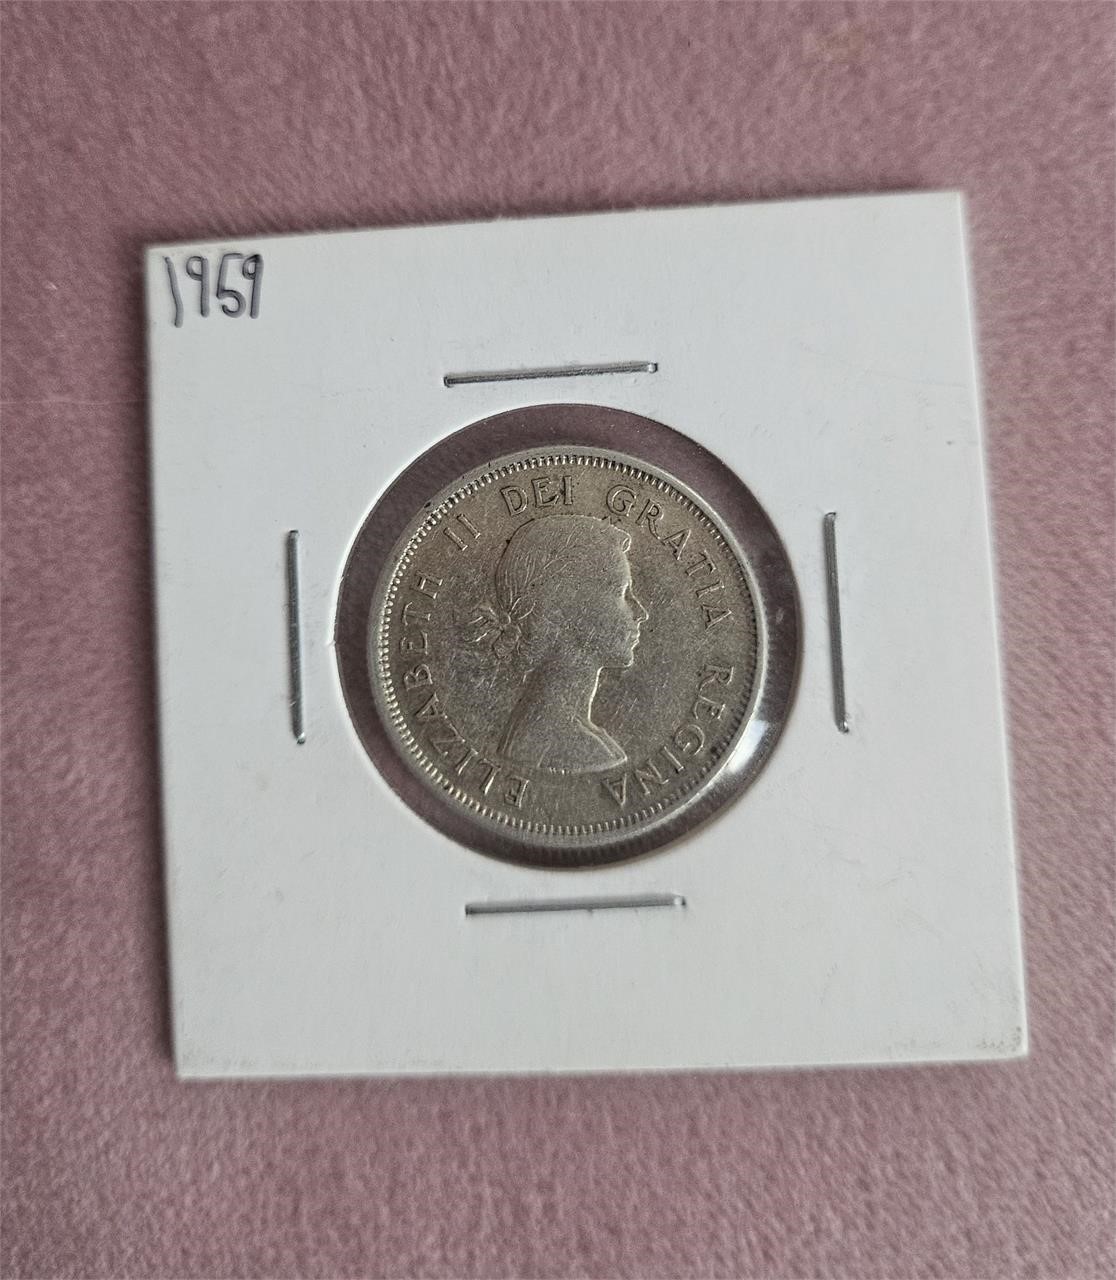 1959 Silver Canadian Quarter